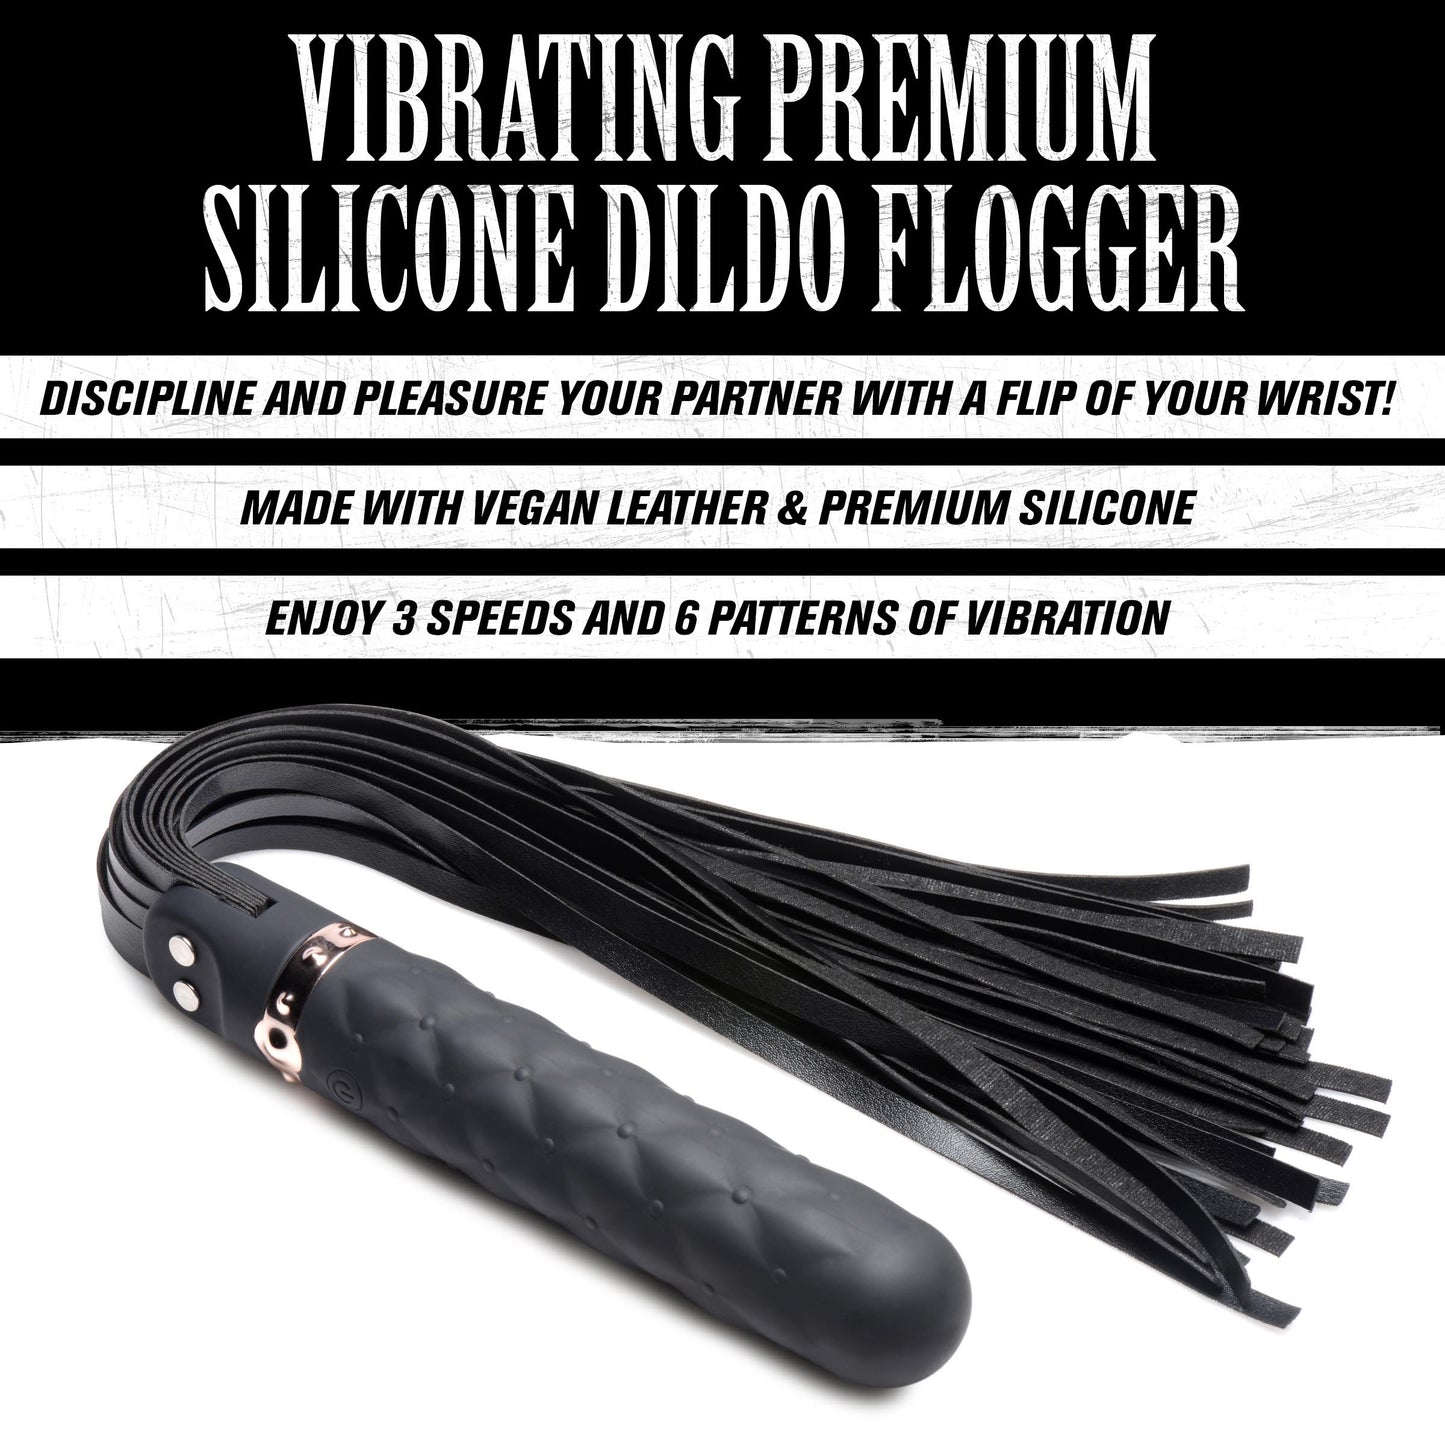 9x Vibrating Silicone Dildo Flogger